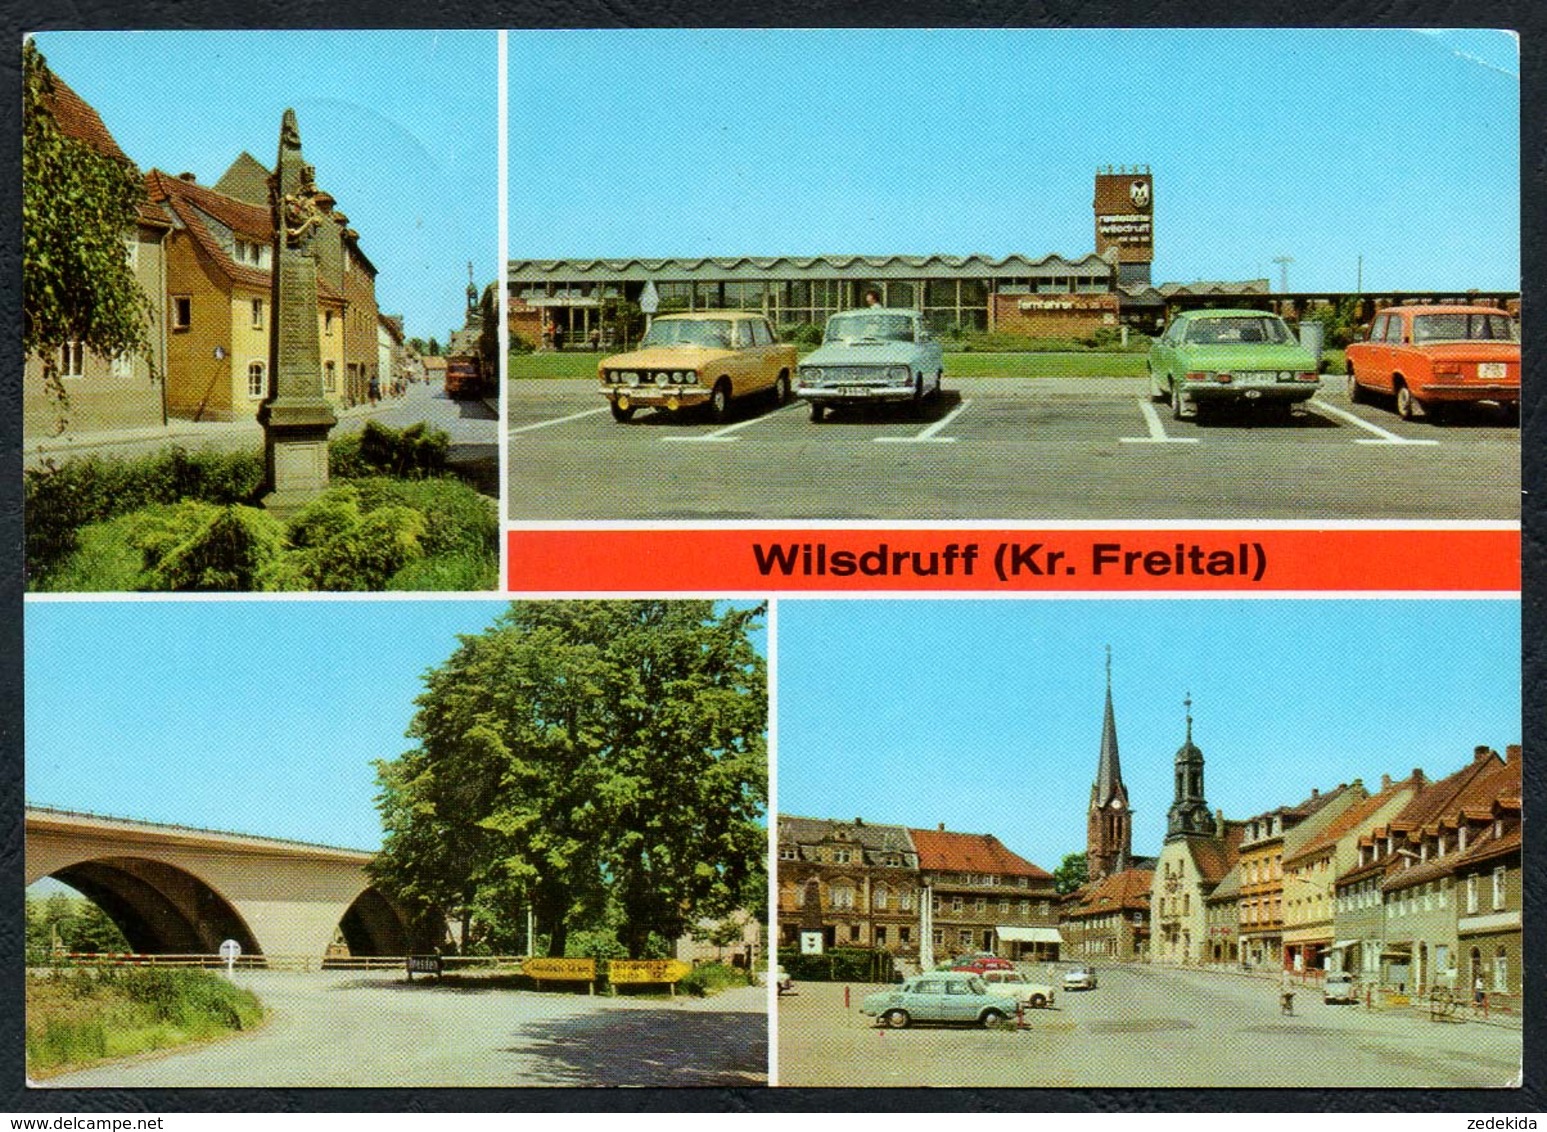 C5664 - Wilsdruff Kr. Freital - Postsäule Autobahnraststätte Markt Brücke - Auto Car - Reichenbach - Freital